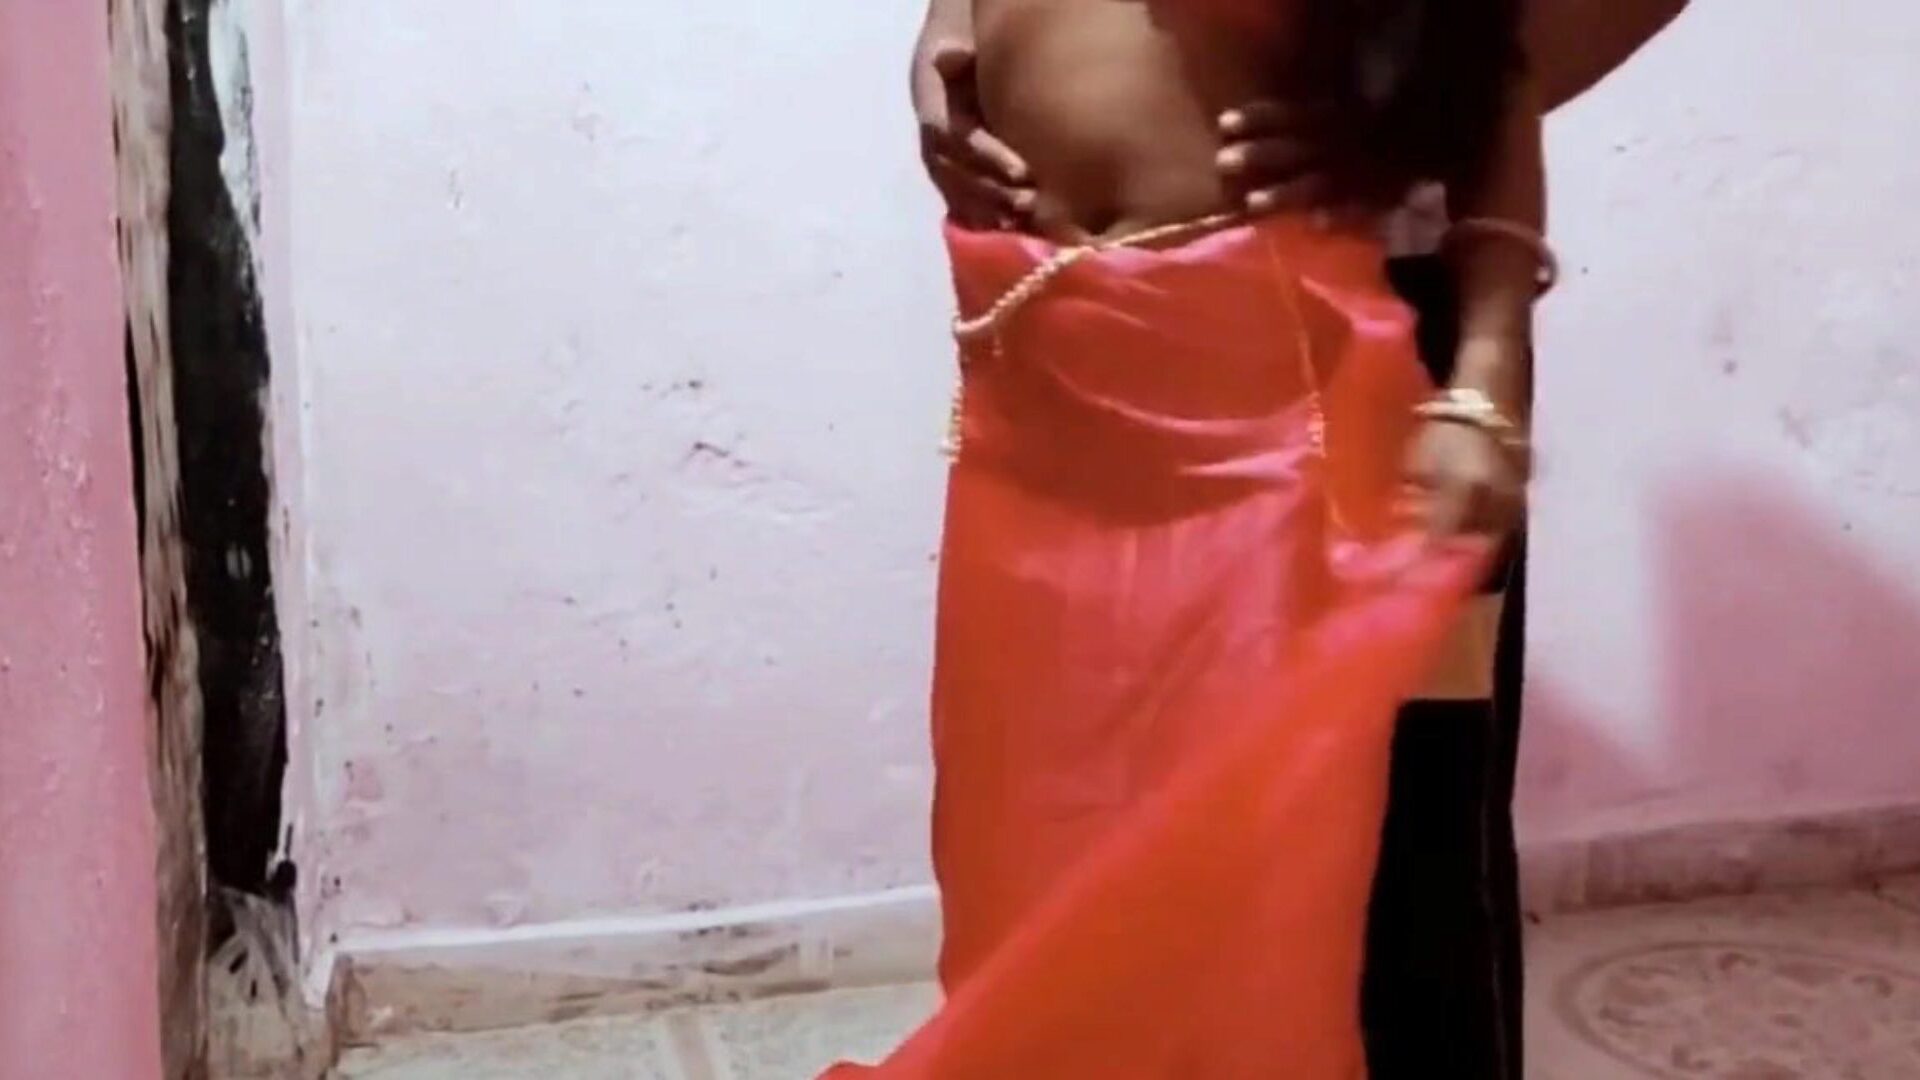 alex ne bhabhi ko choda zimmer spaß mit mann: kostenlos porno b9 alex ne bhabhi ko choda zimmer spaß mit mann filme auf xhamster ansehen - das ultimative archiv von sri lankan asian hd xxx pornografie rohr filmszenen